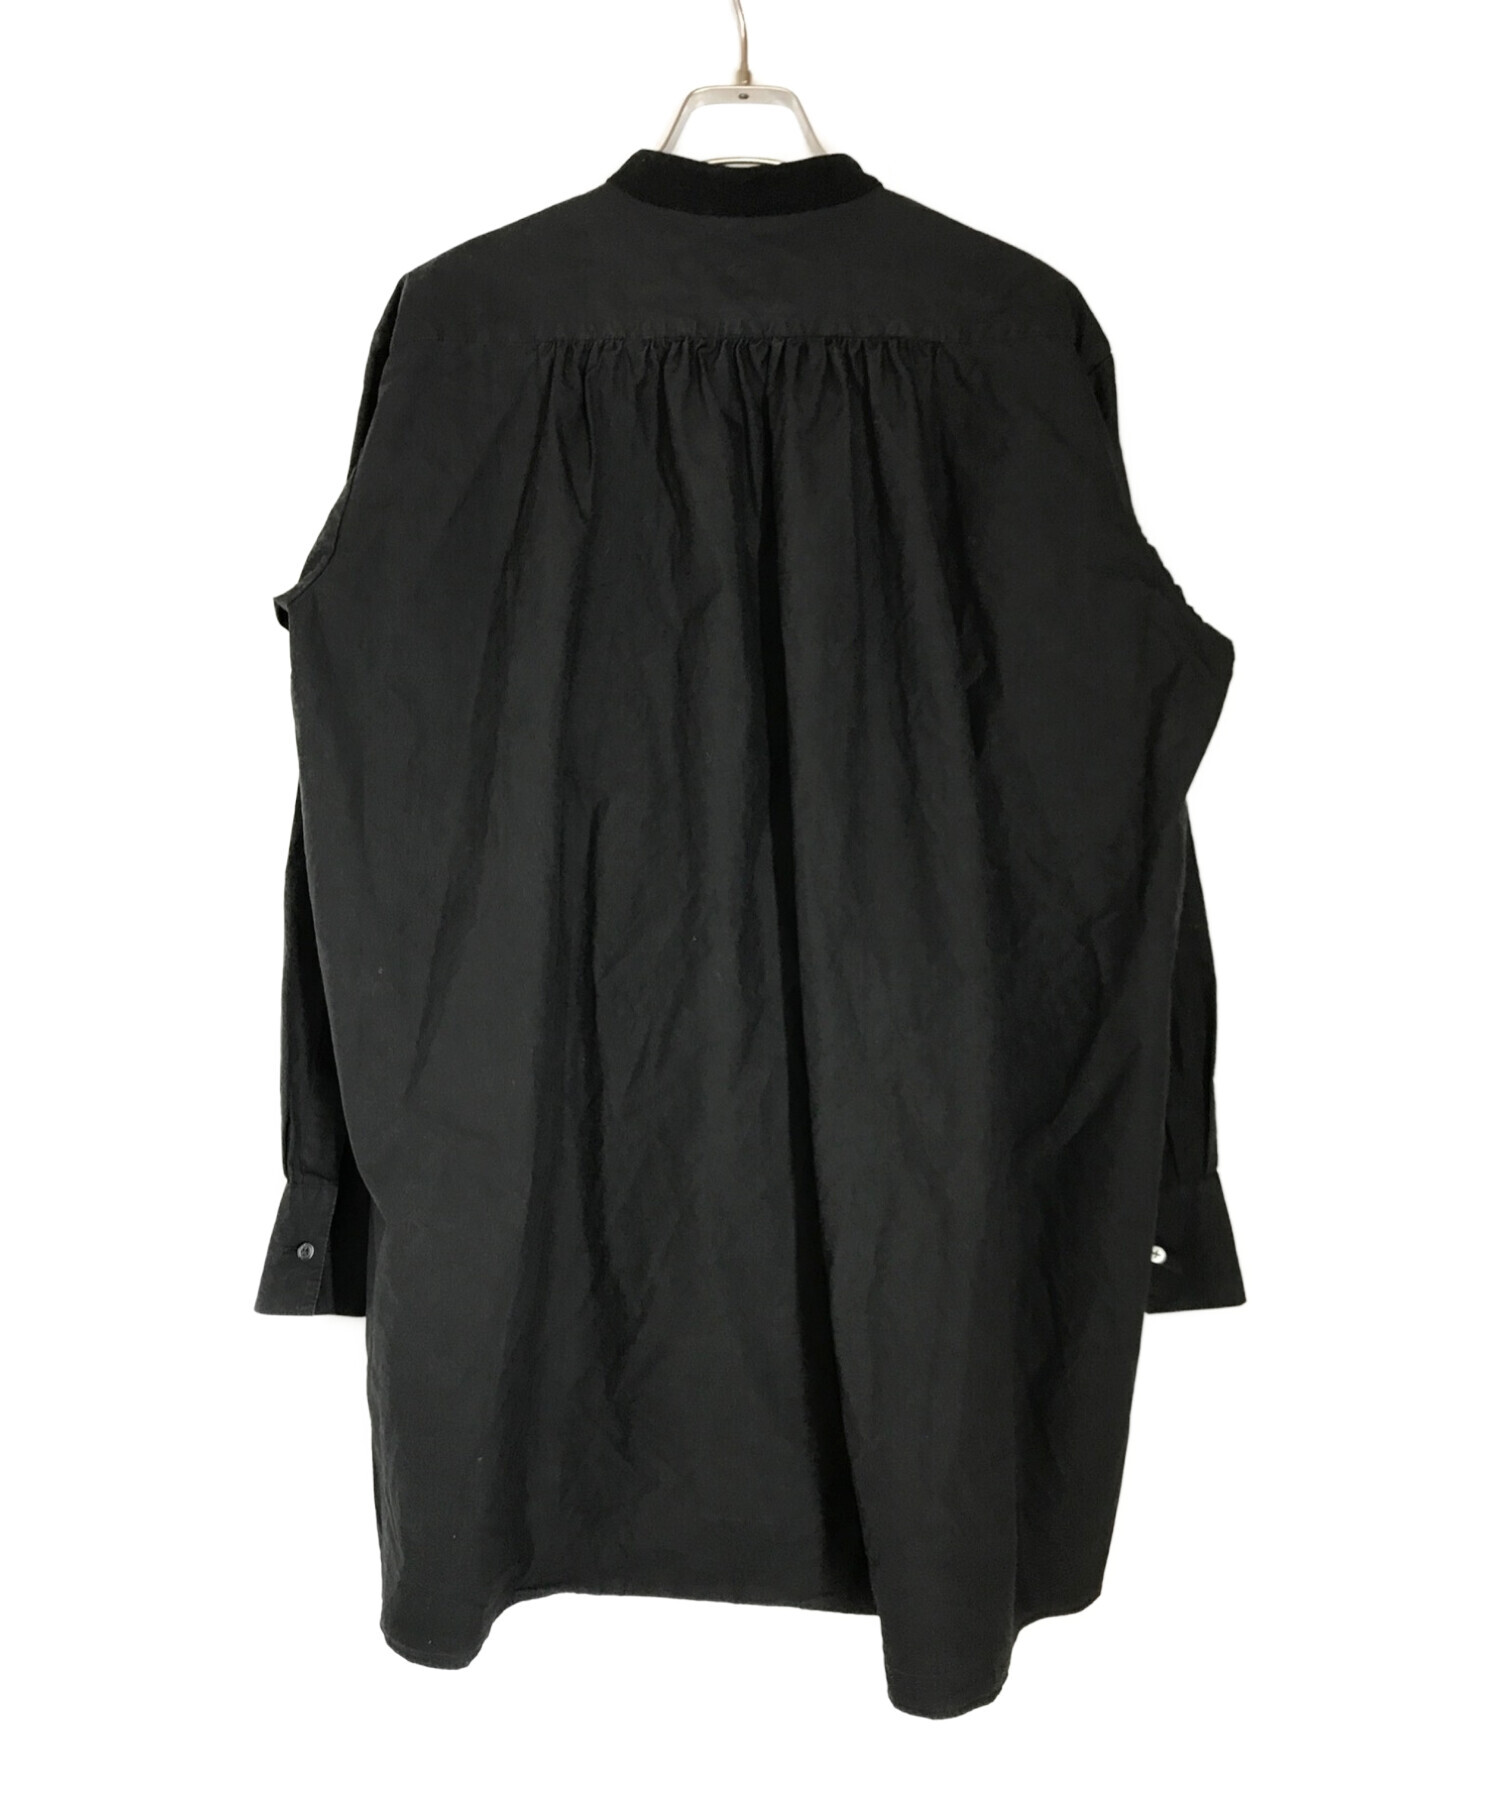 ROKU ロク COTTON DRESS SHIRT 36